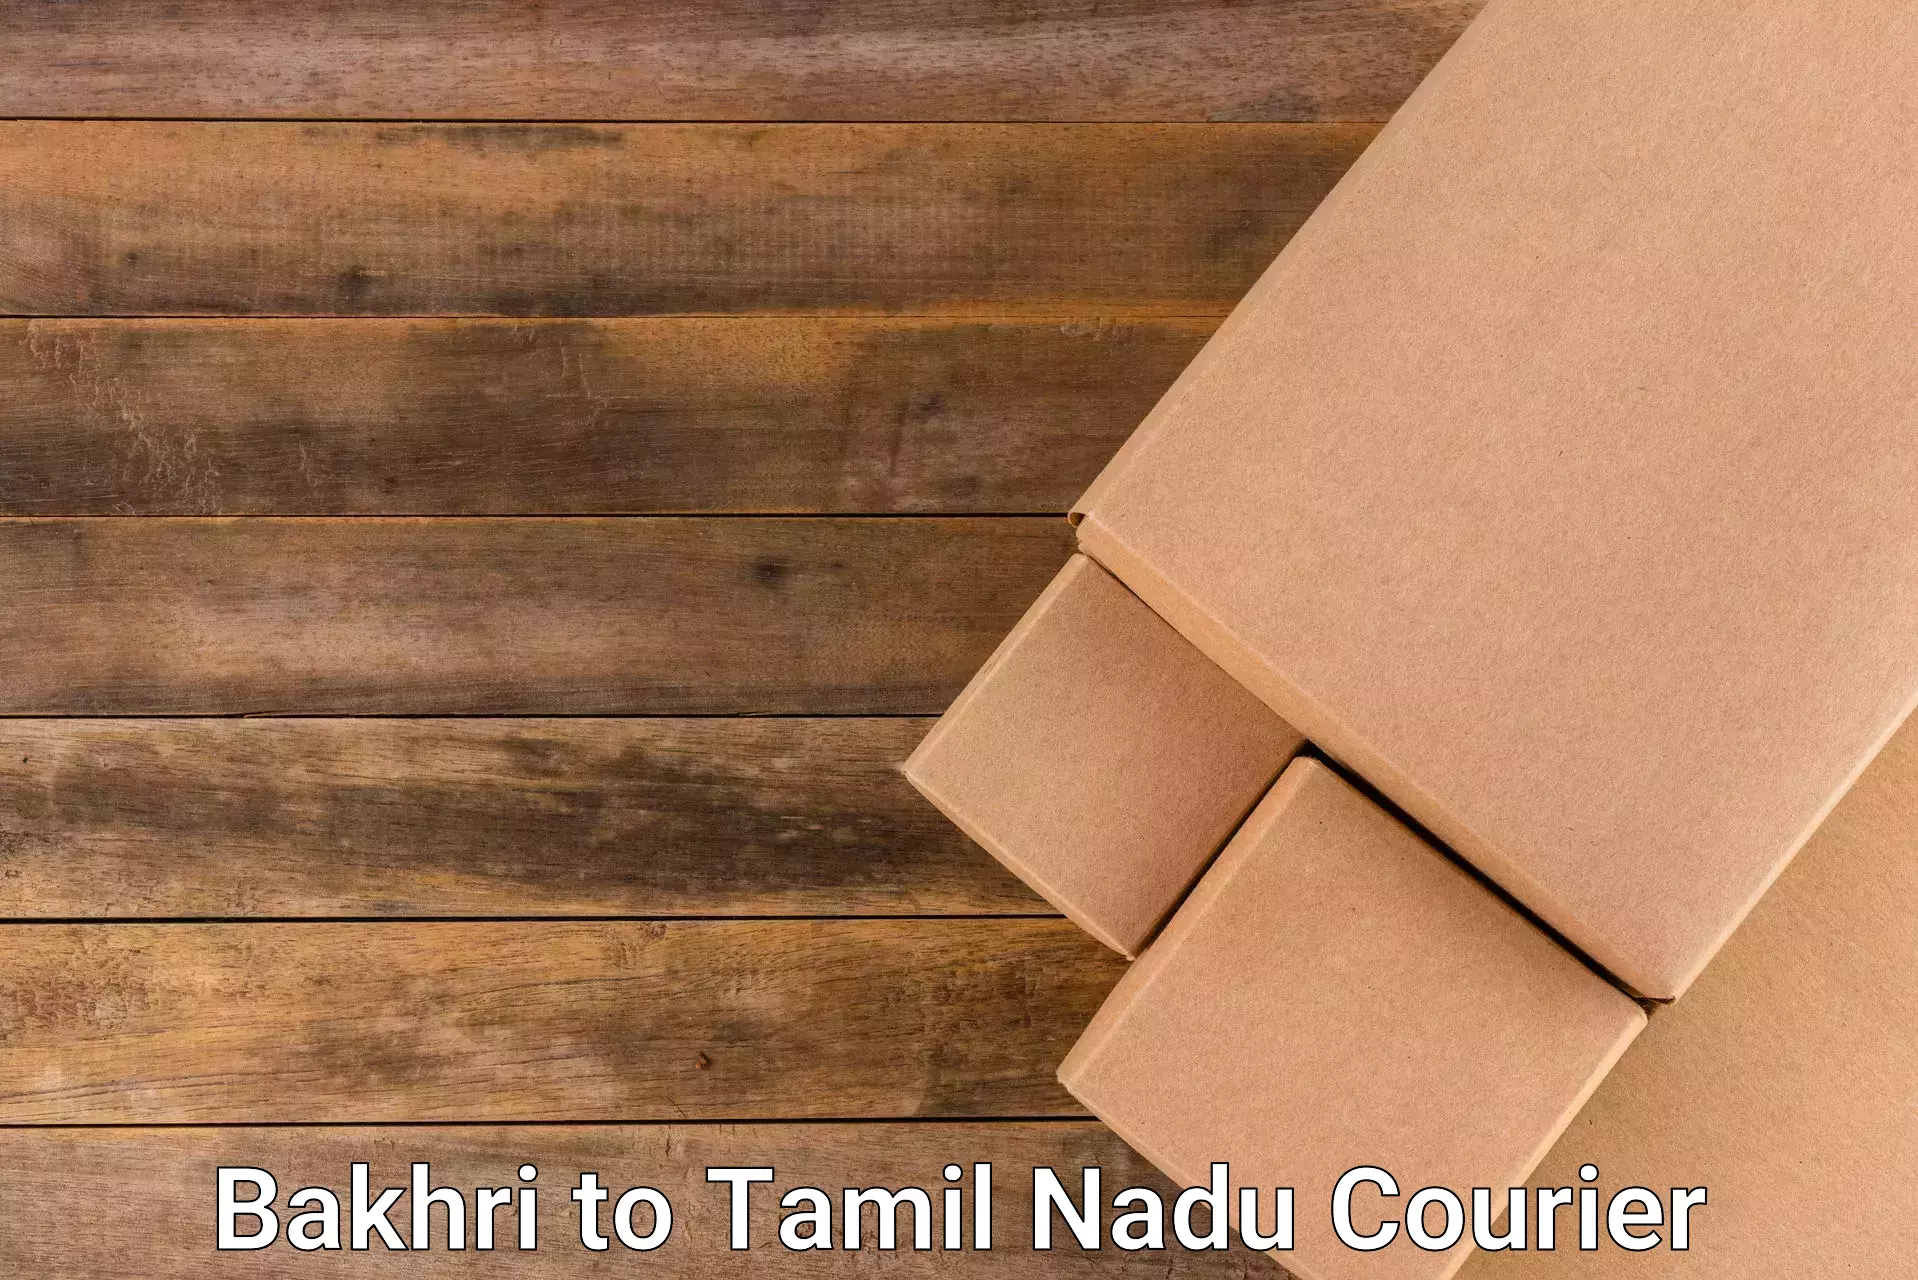 Diverse delivery methods Bakhri to Tamil Nadu